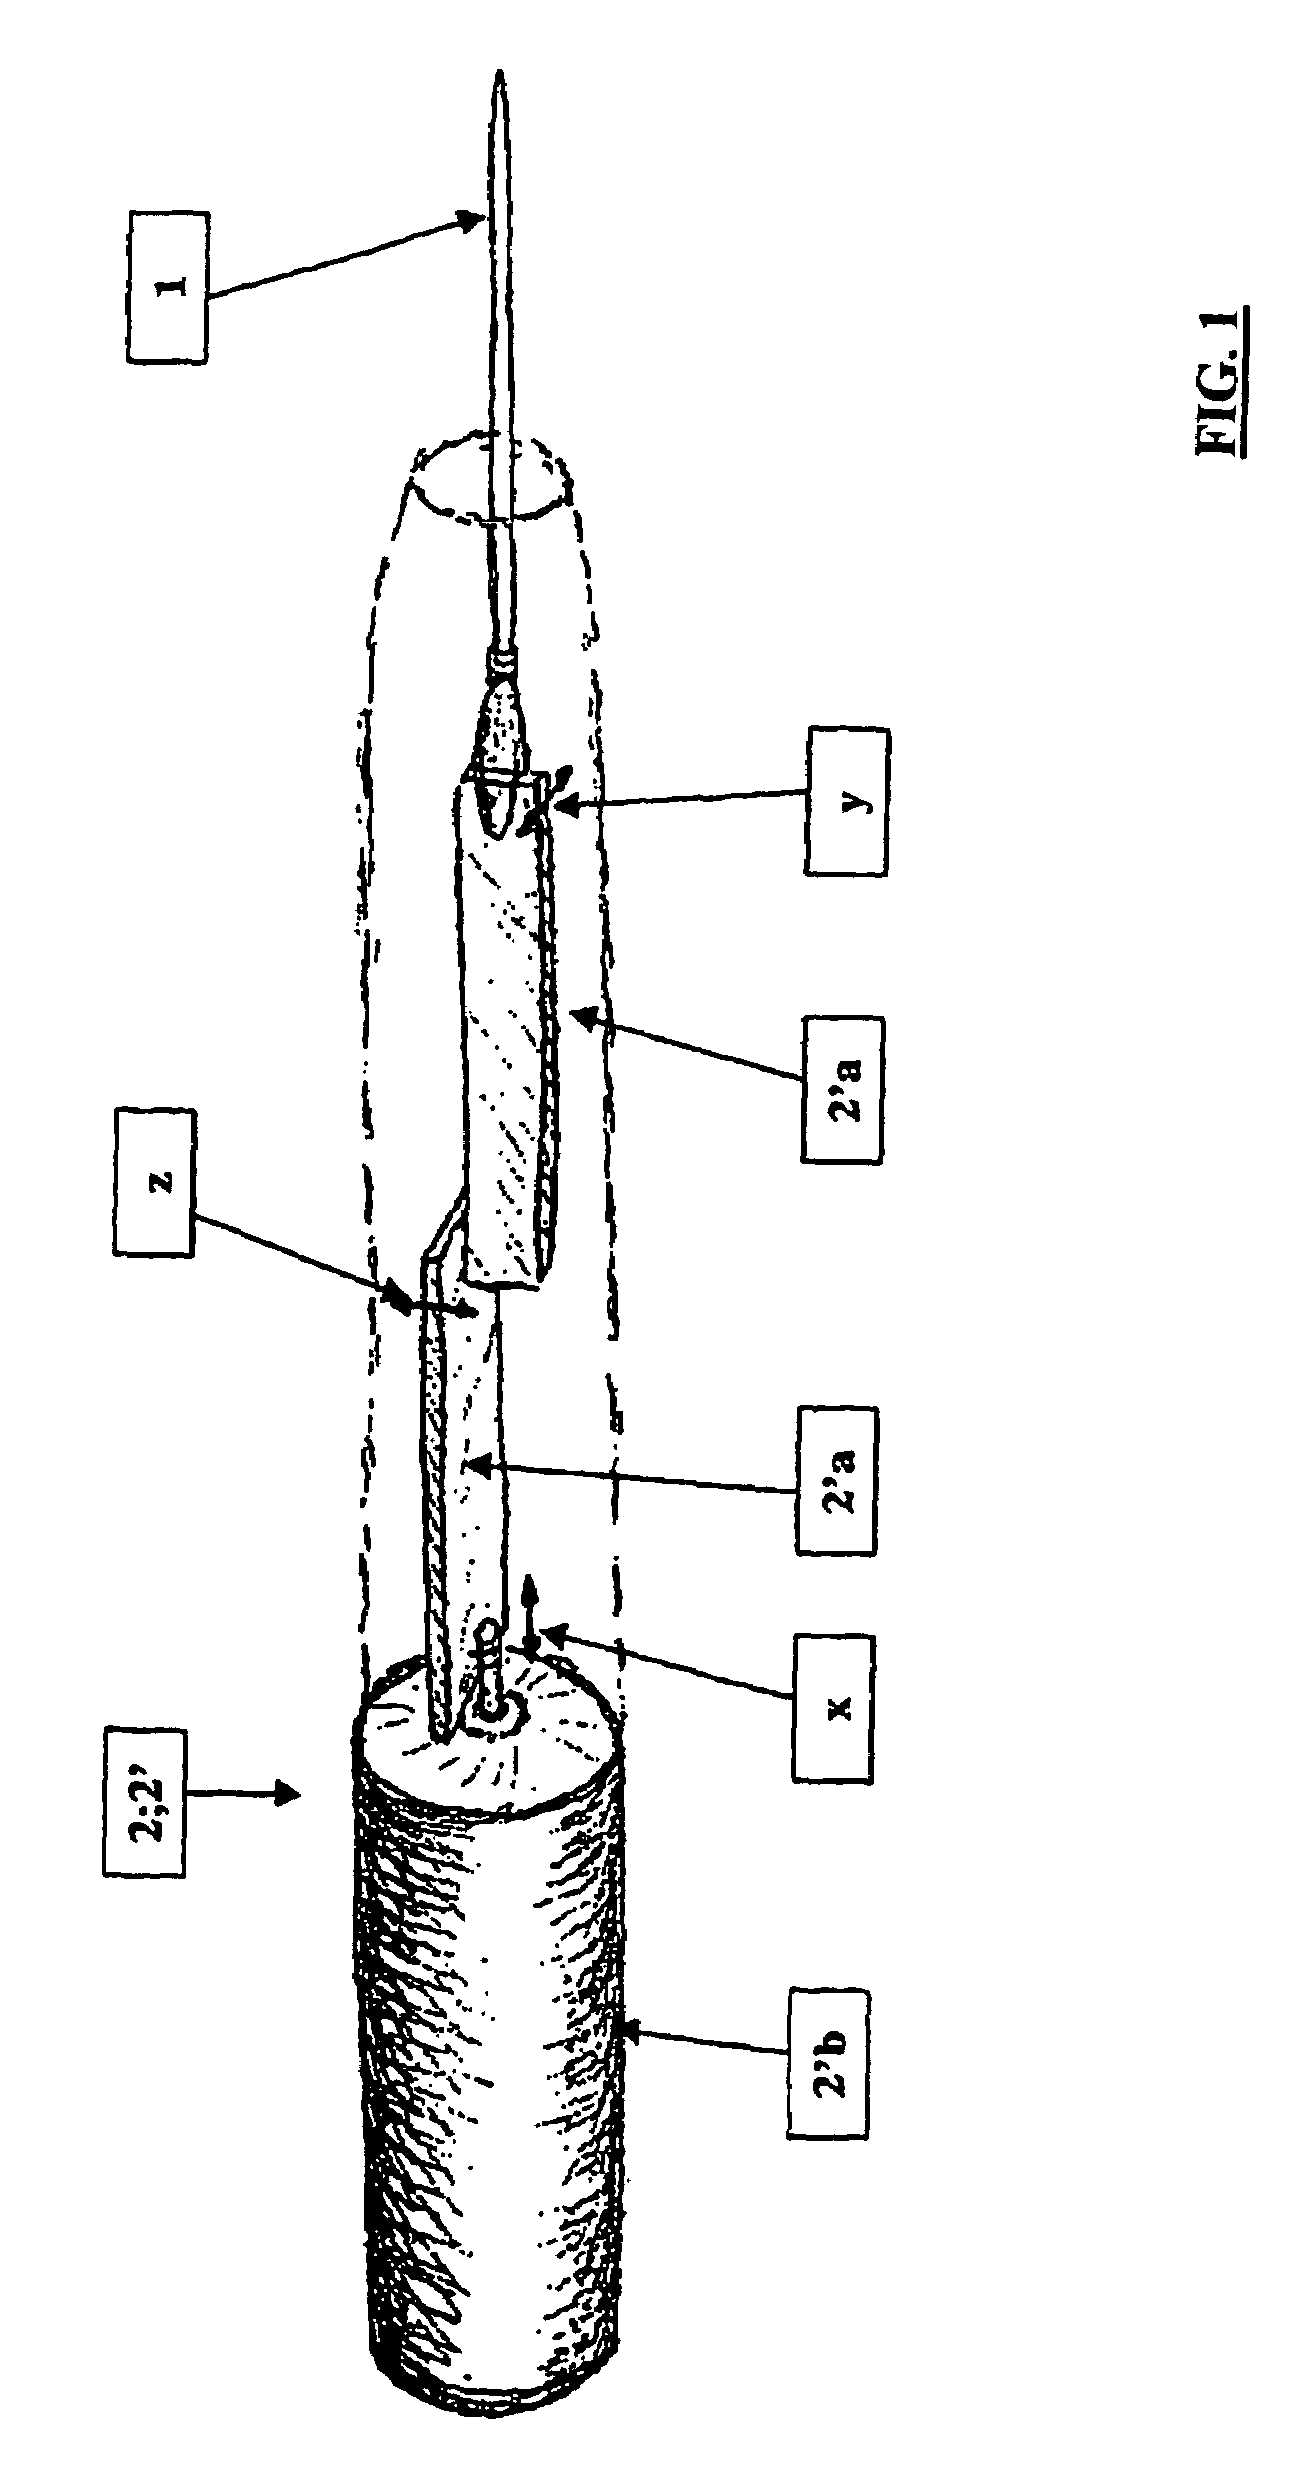 Micromanipulator including piezoelectric benders